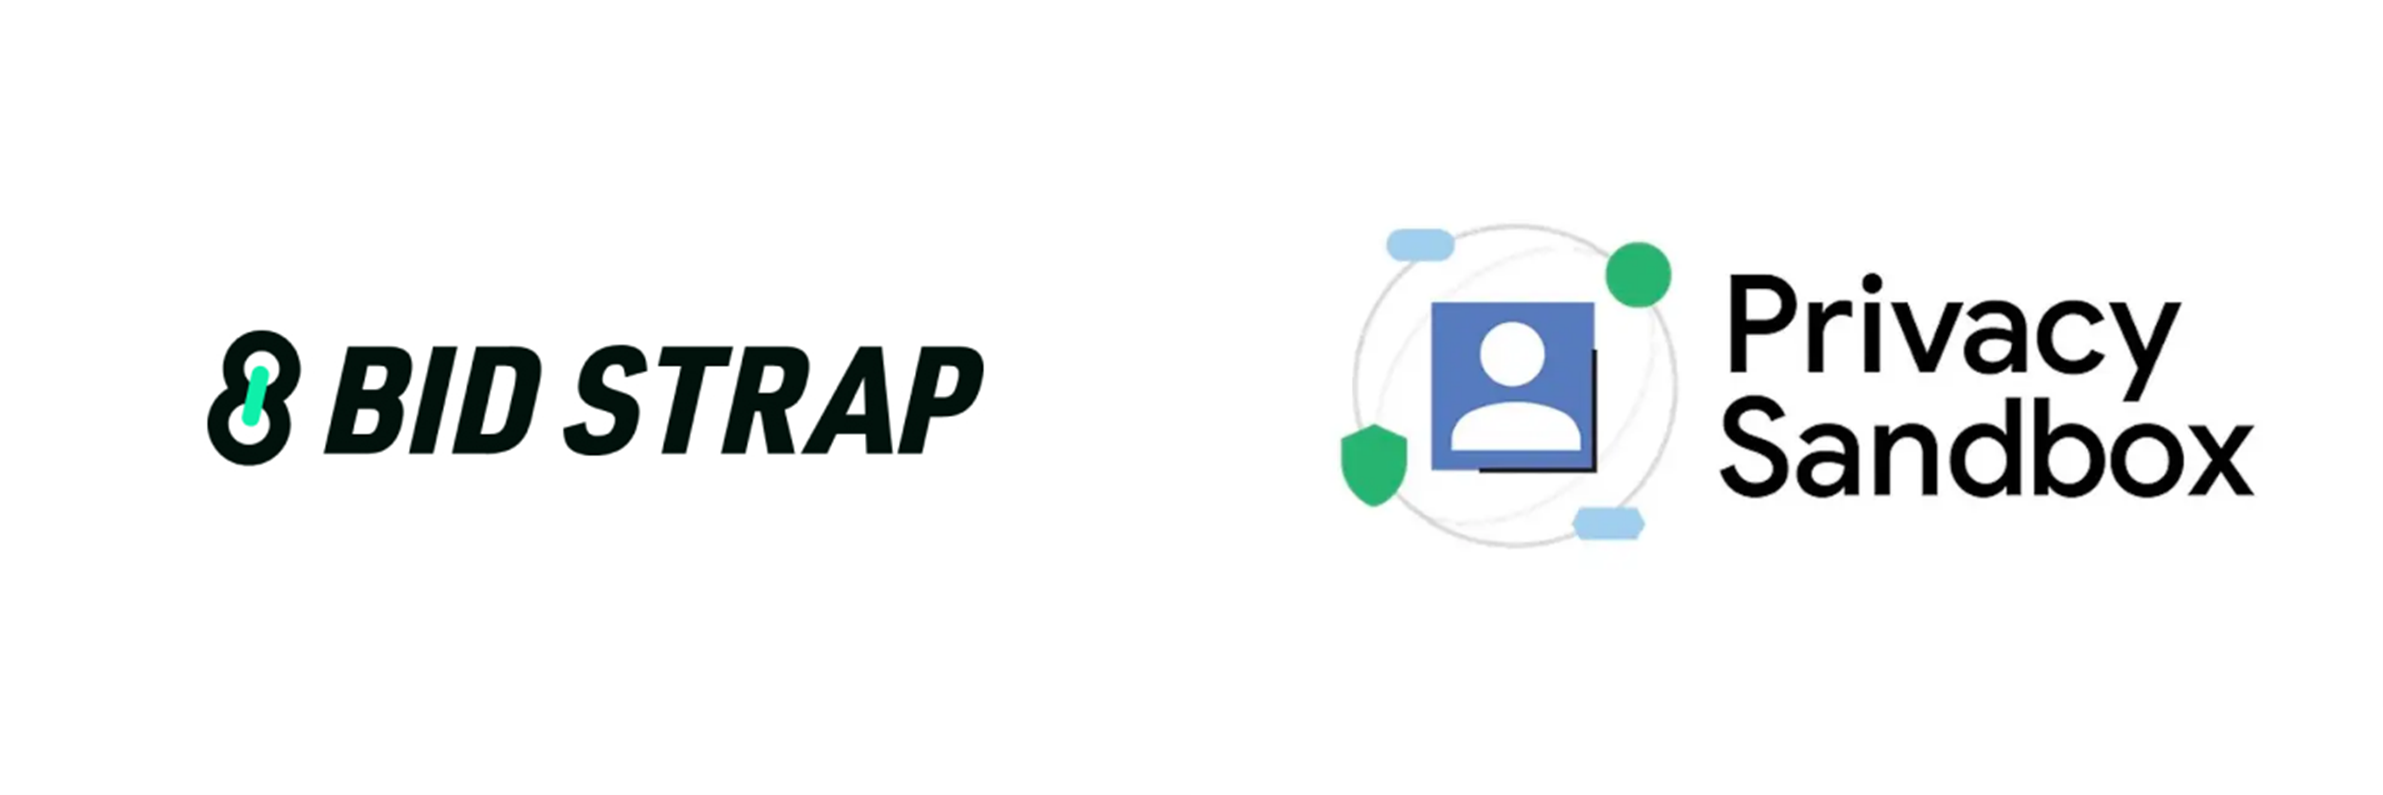 株式会社fluct、ヘッダービディングラッパーソリューション「BID STRAP」にて、Privacy Sandboxへ対応。 「Topics API」の実装を開始。「Protected Audience」検証開始。